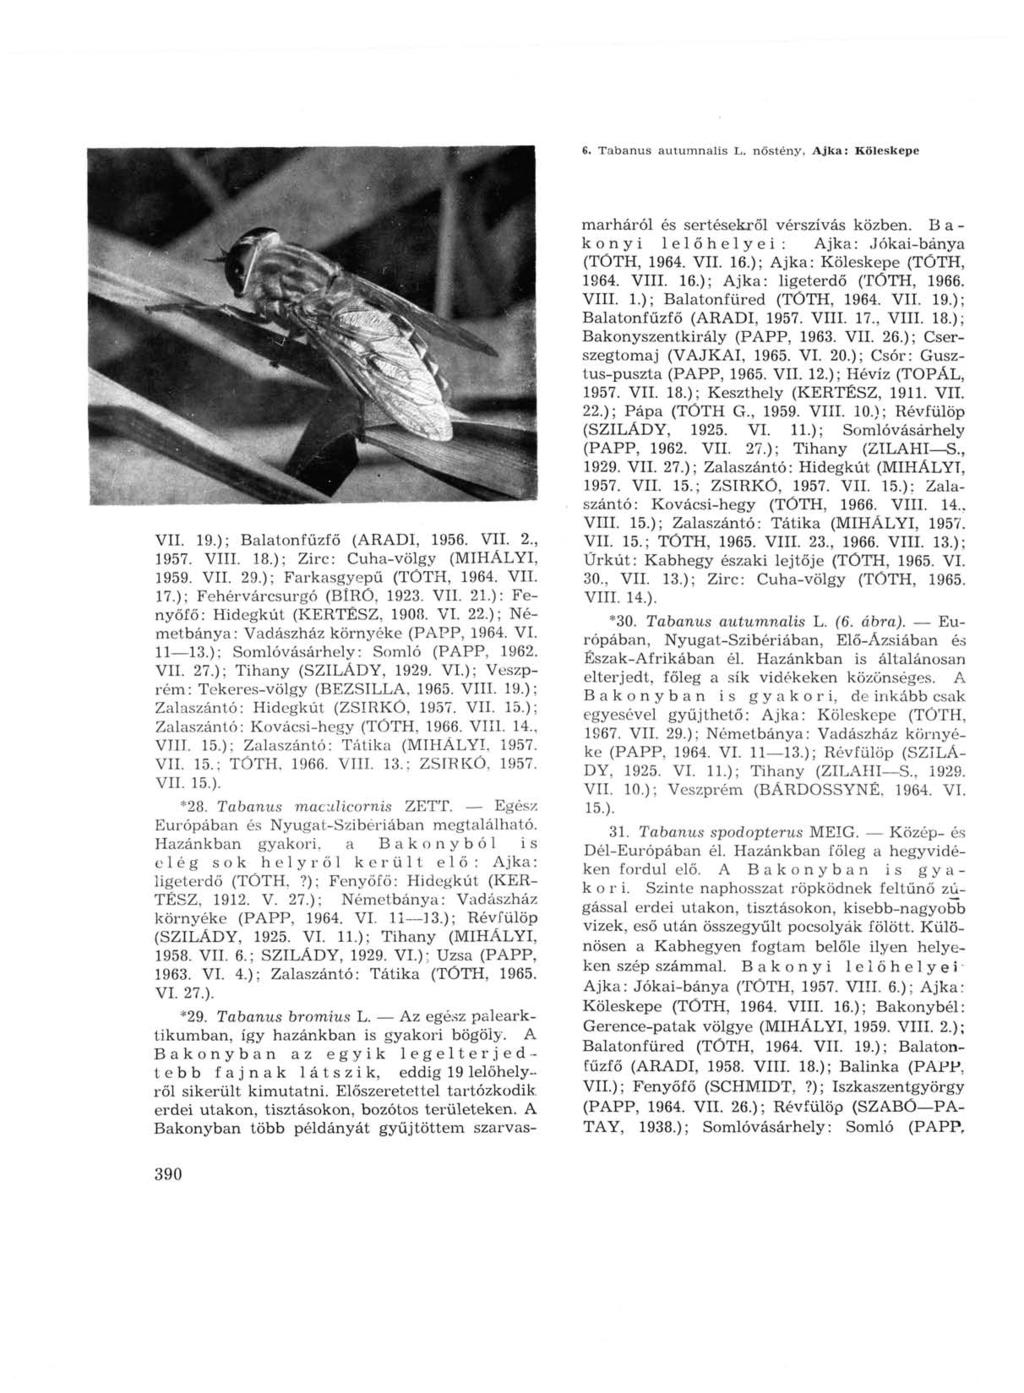 6. Tabanus autumnalis L. nőstény, Ajka: Köleskepe VIL 19.); Balatonfűzfő (ARADI, 1956. VII. 2., 1957. VIII. 18.); Zirc: Cuha-völgy (MIHÁLYI, 1959. VII. 29.); Farkasgyepű (TÓTH, 1964. VII. 17.